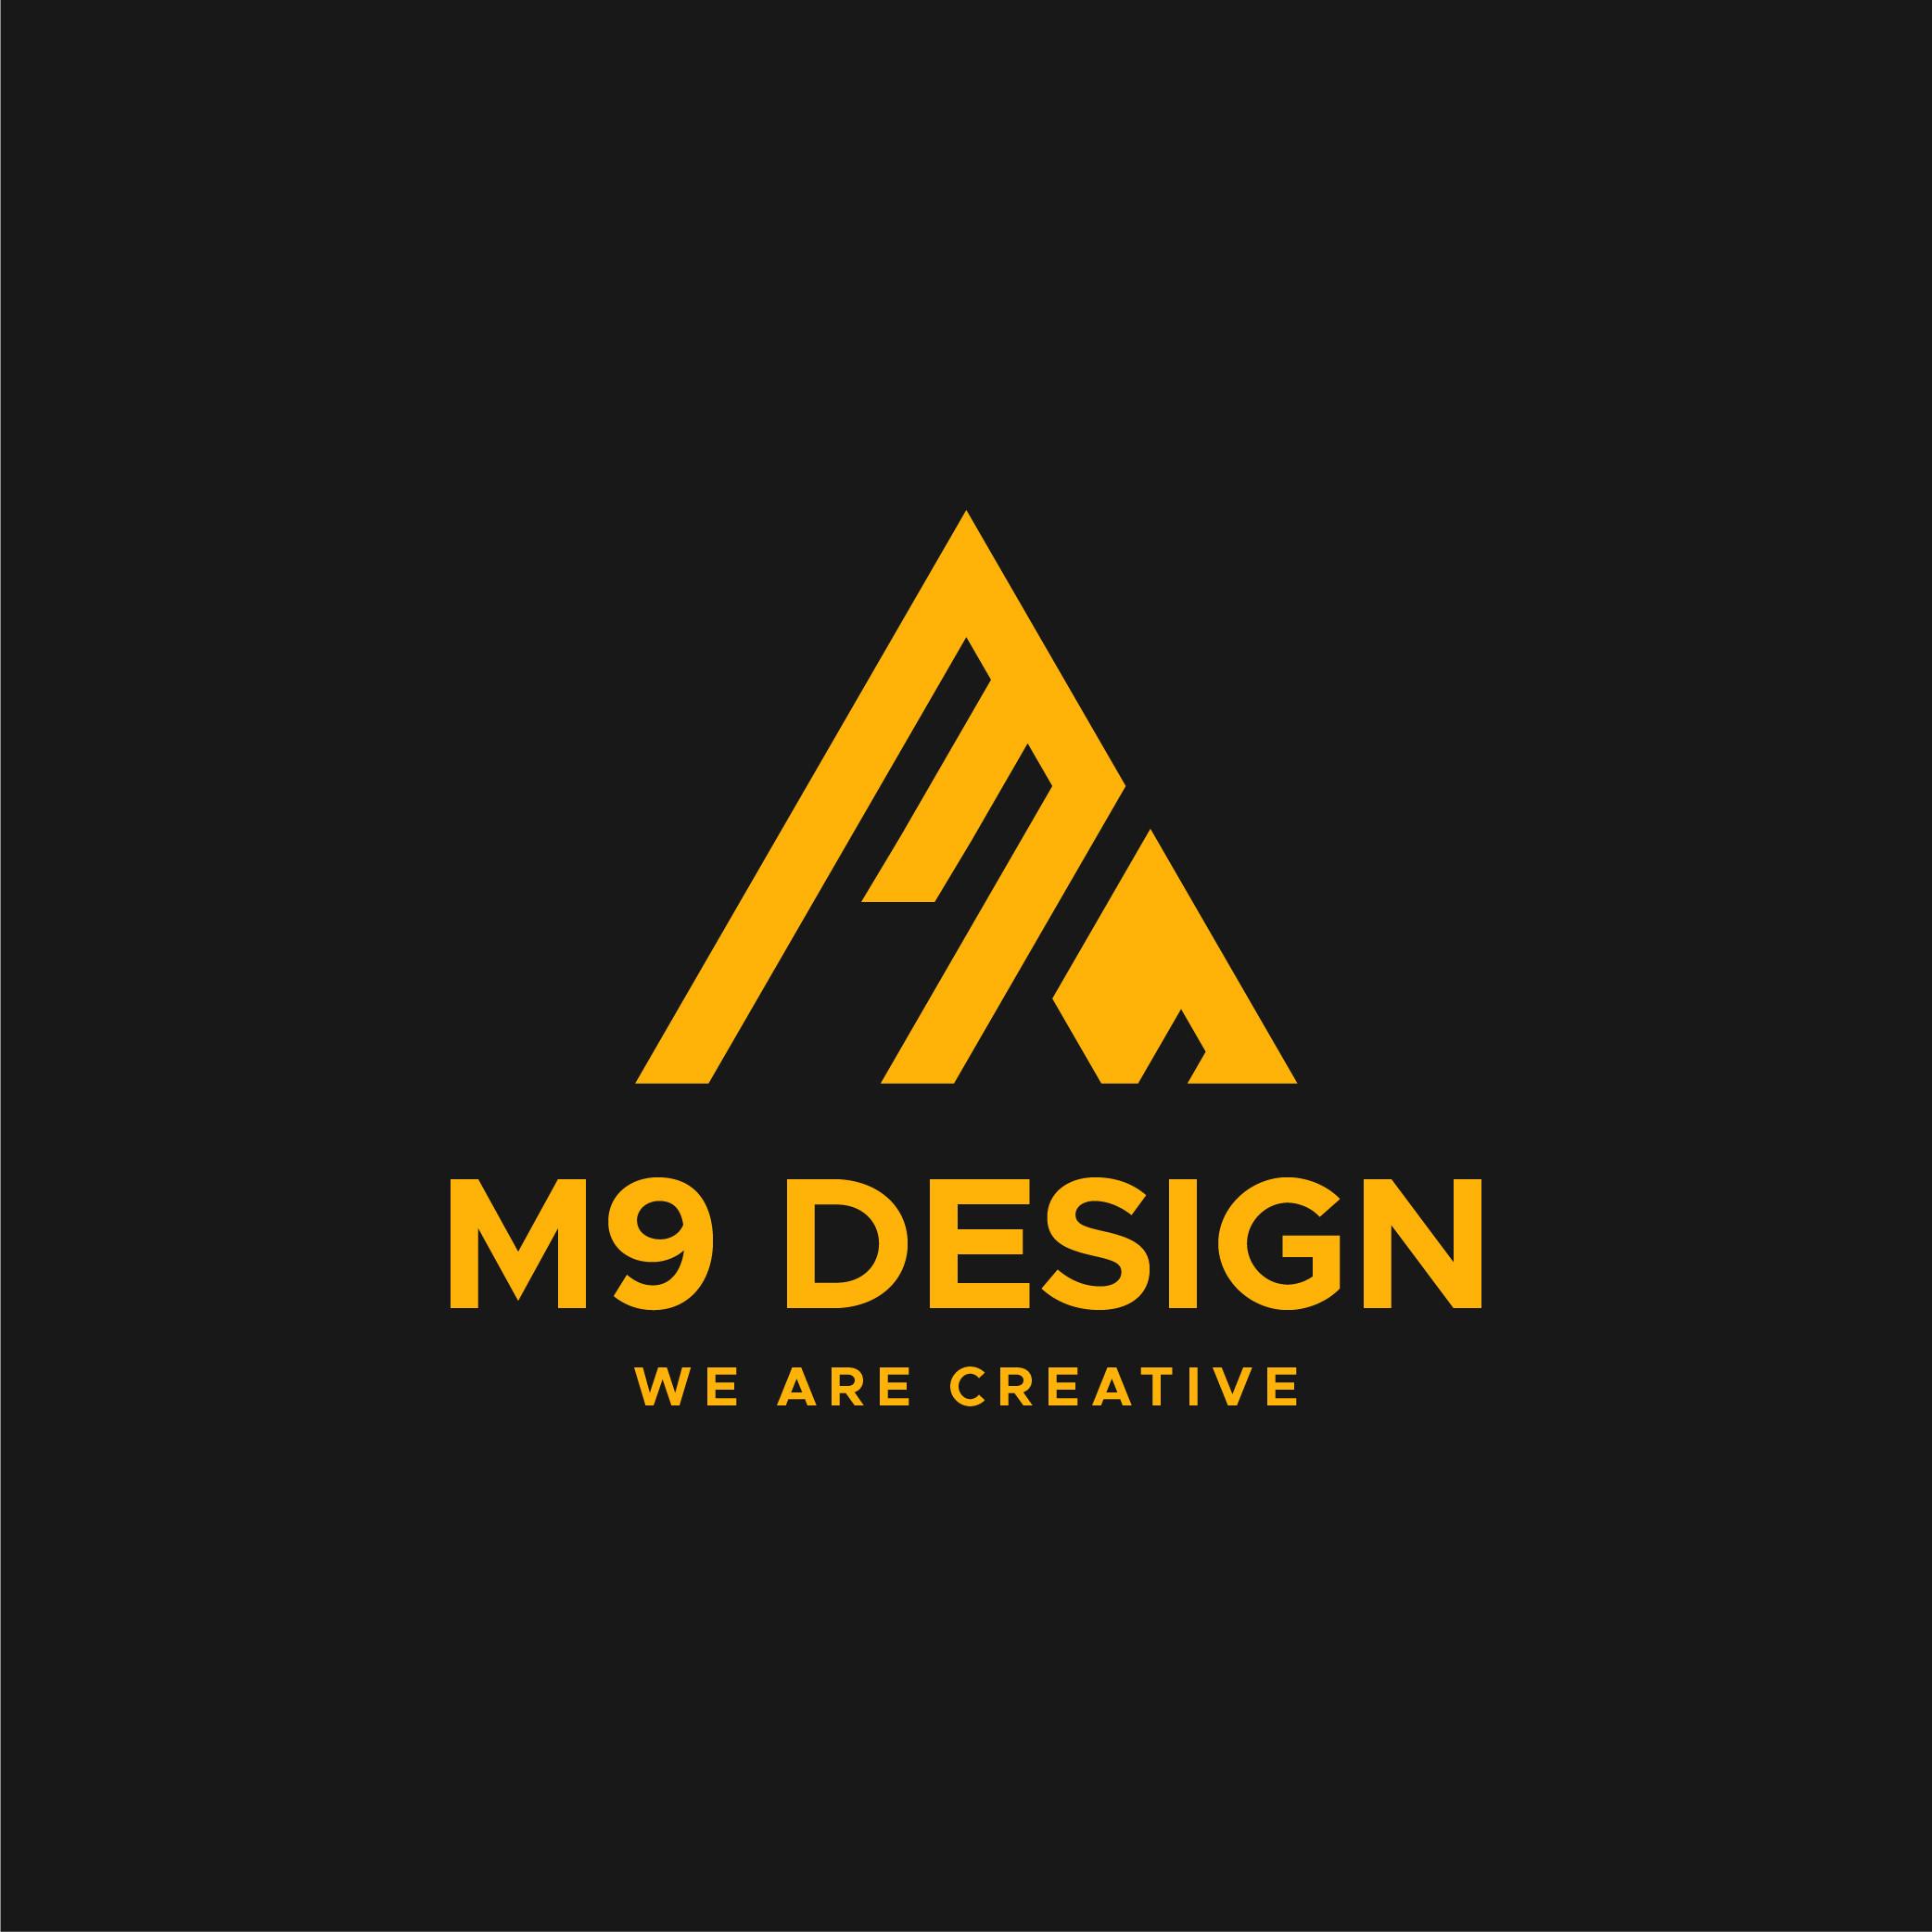 M9 Design